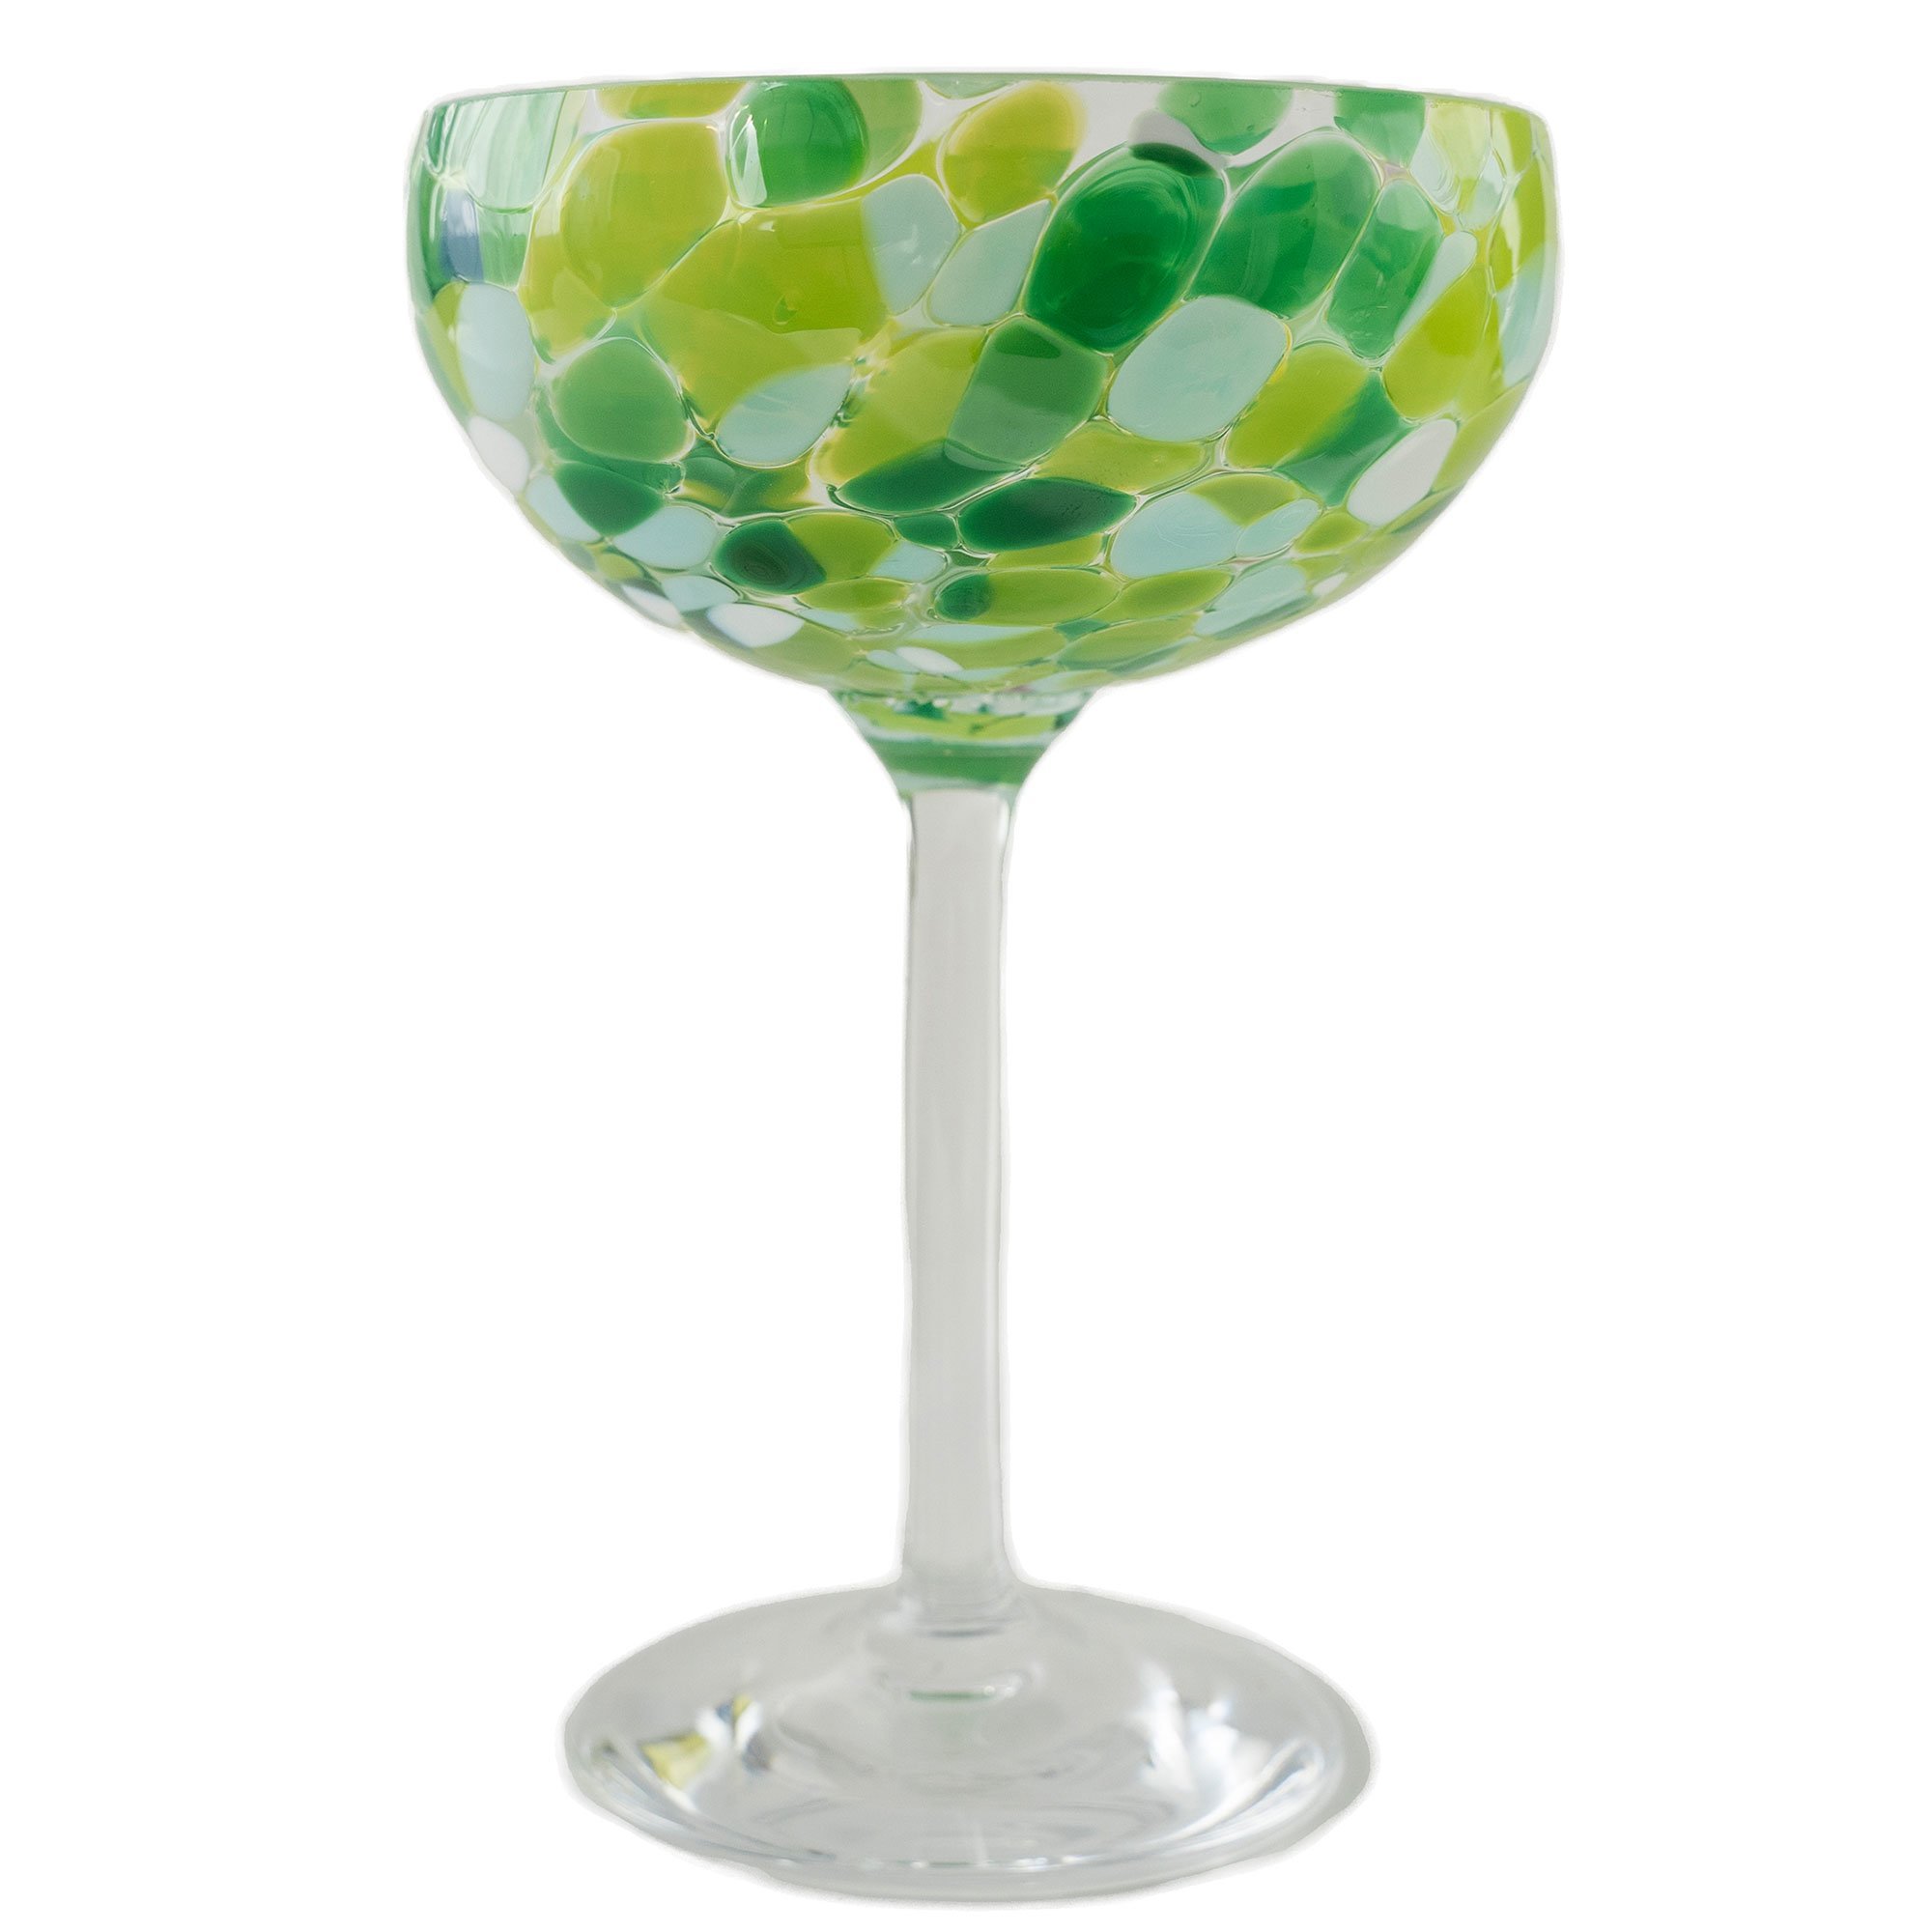 Magnor Swirl champagneglas 22 cl, grøn